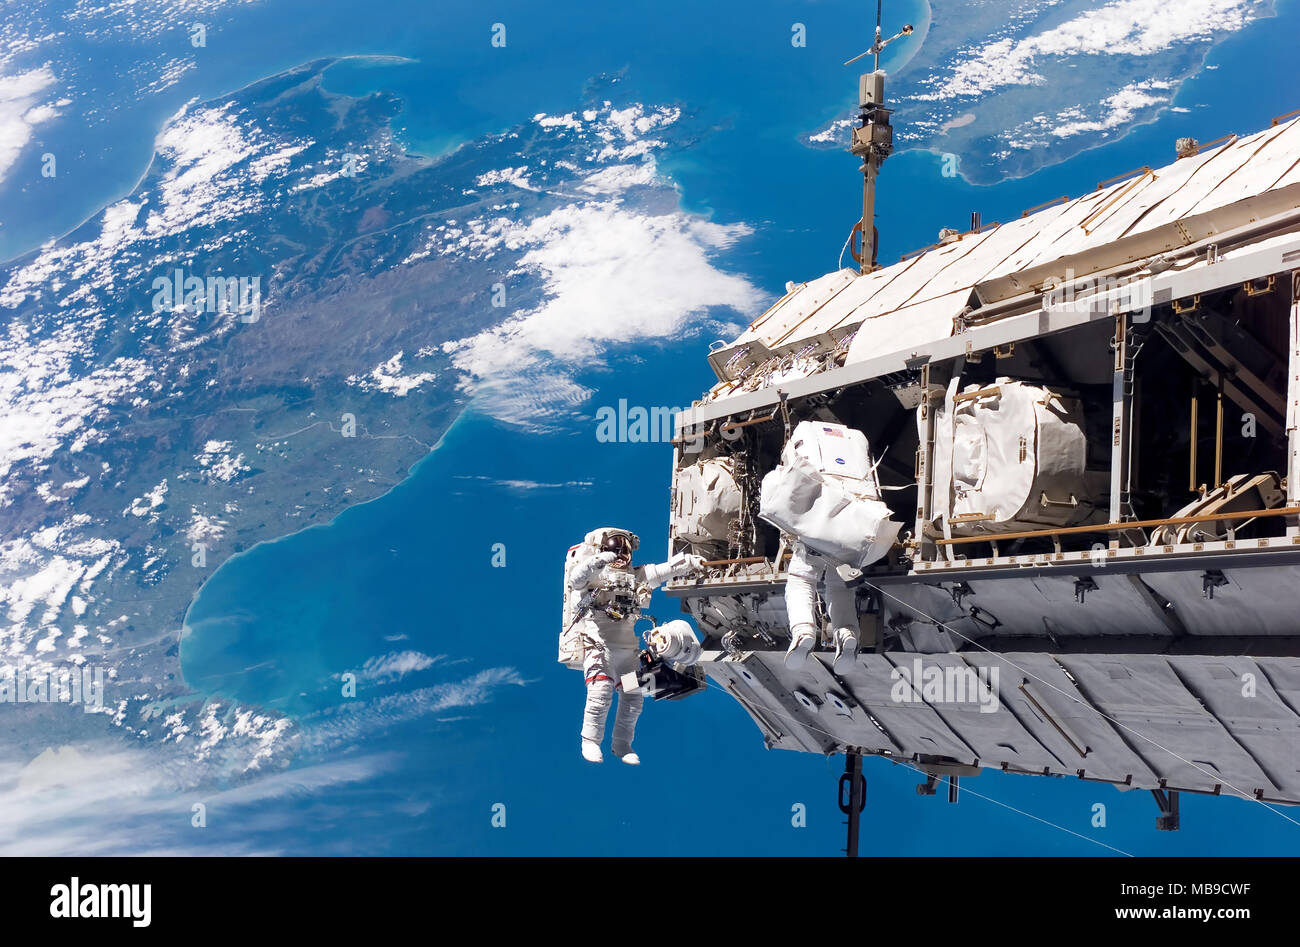 Les astronautes DE LA STATION SPATIALE INTERNATIONALE travaillant sur la construction de la poutre intégrée l'article le 12 décembre 2006. Les îles du nord et du sud de la Nouvelle-Zélande sont en dessous d'eux. Banque D'Images